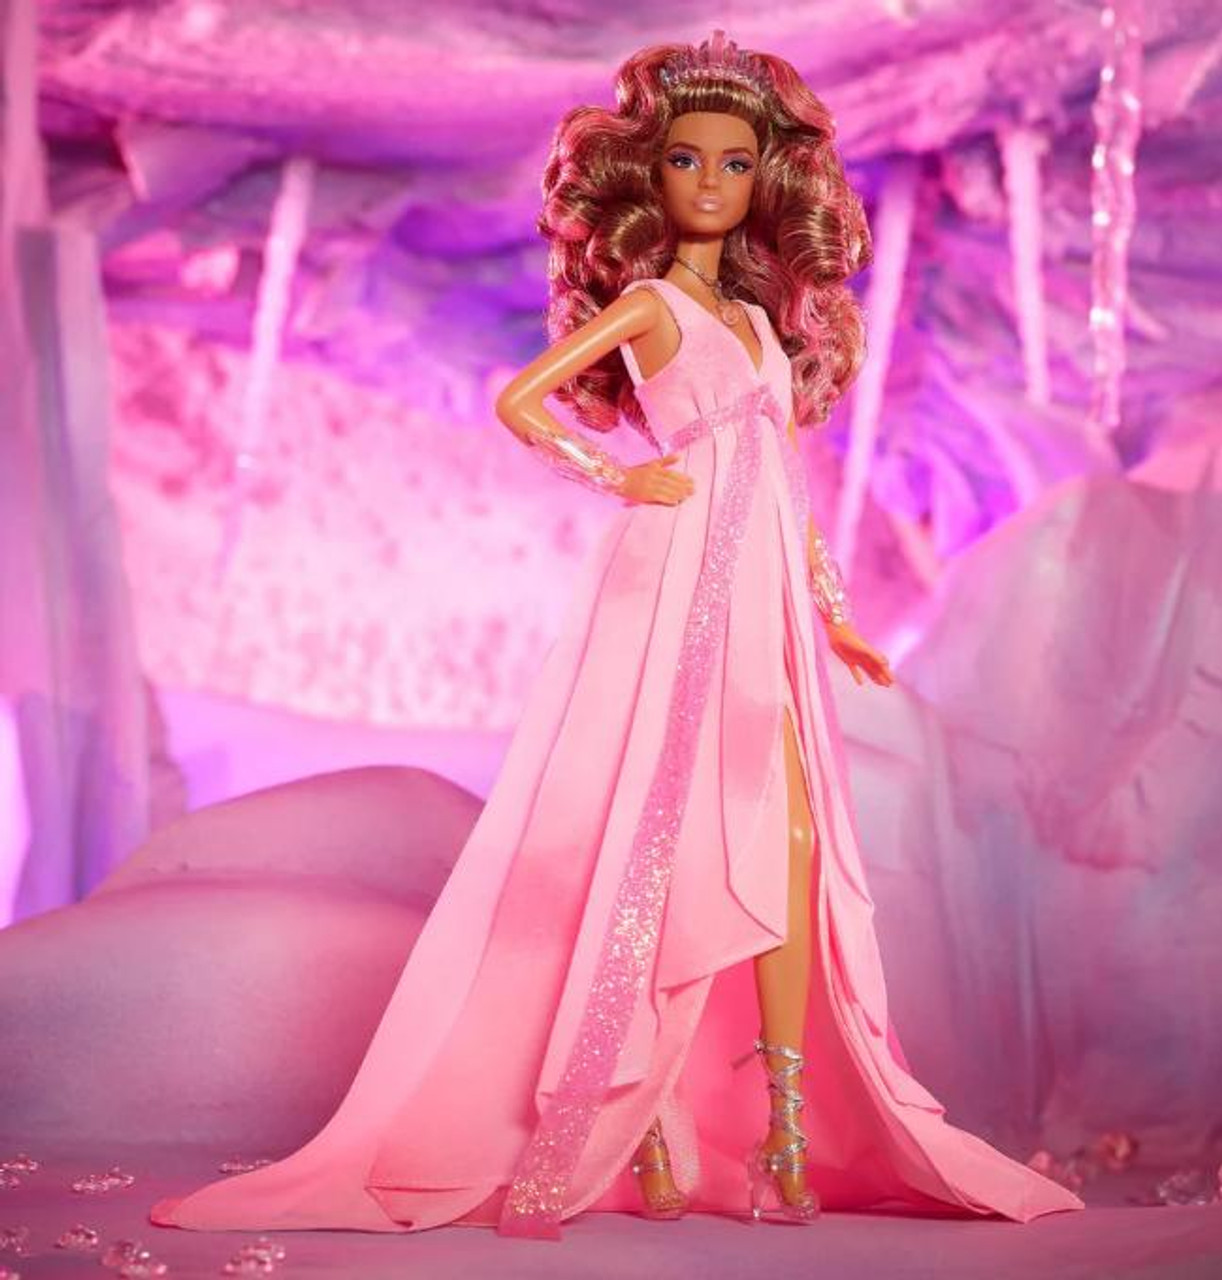 Barbie Signature Barbie Crystal Fantasy Collection Rose Quartz